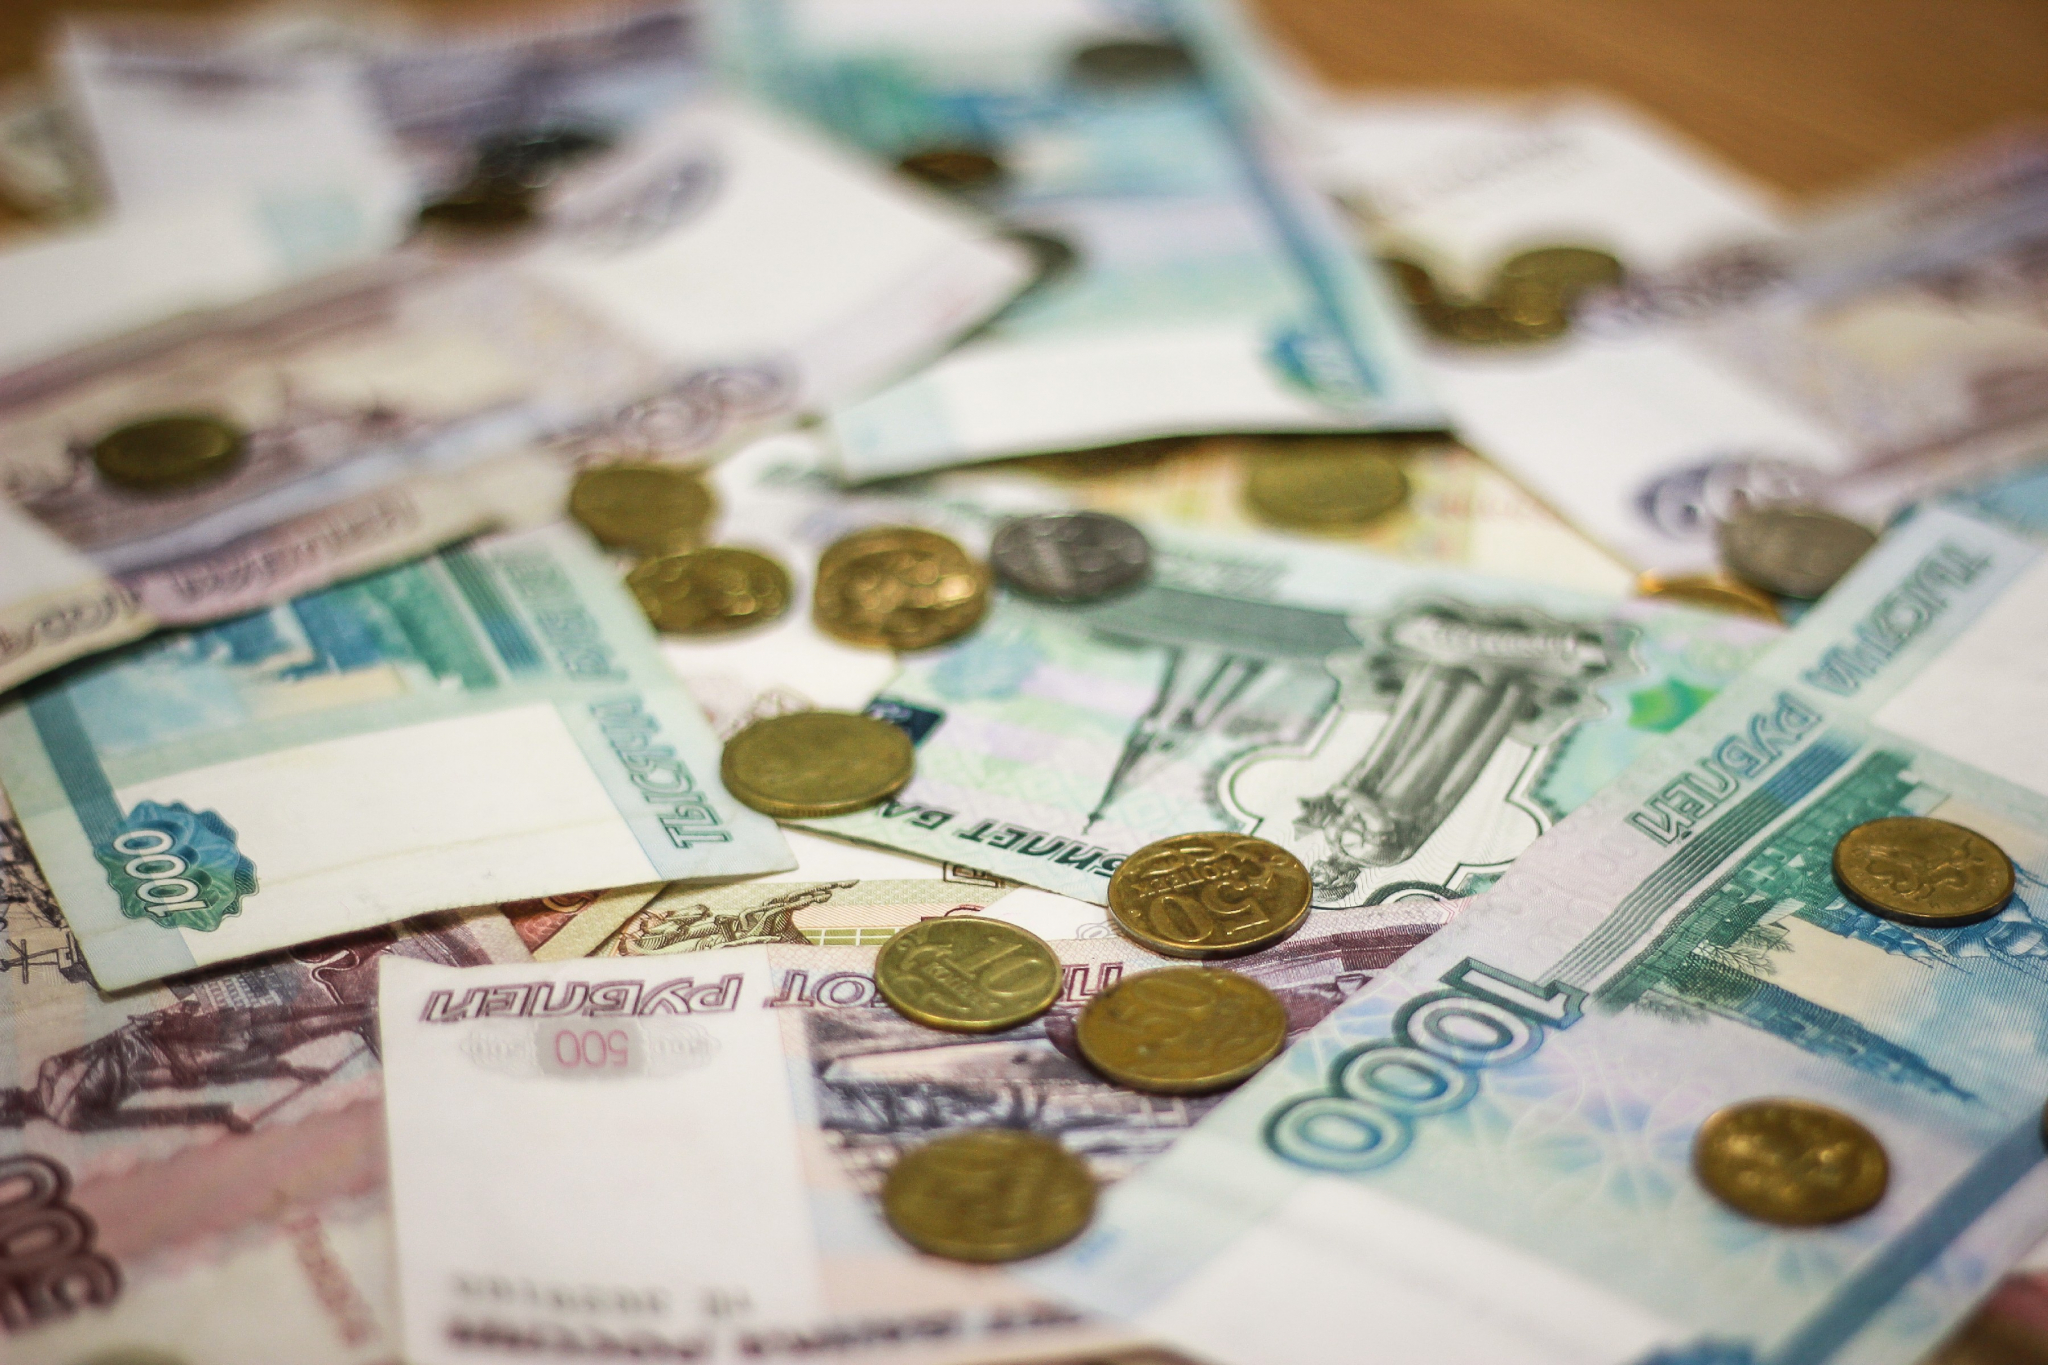 Доверчивая жительница Саранска потеряла почти 15 тысяч рублей, поверив лже-сотруднику банка